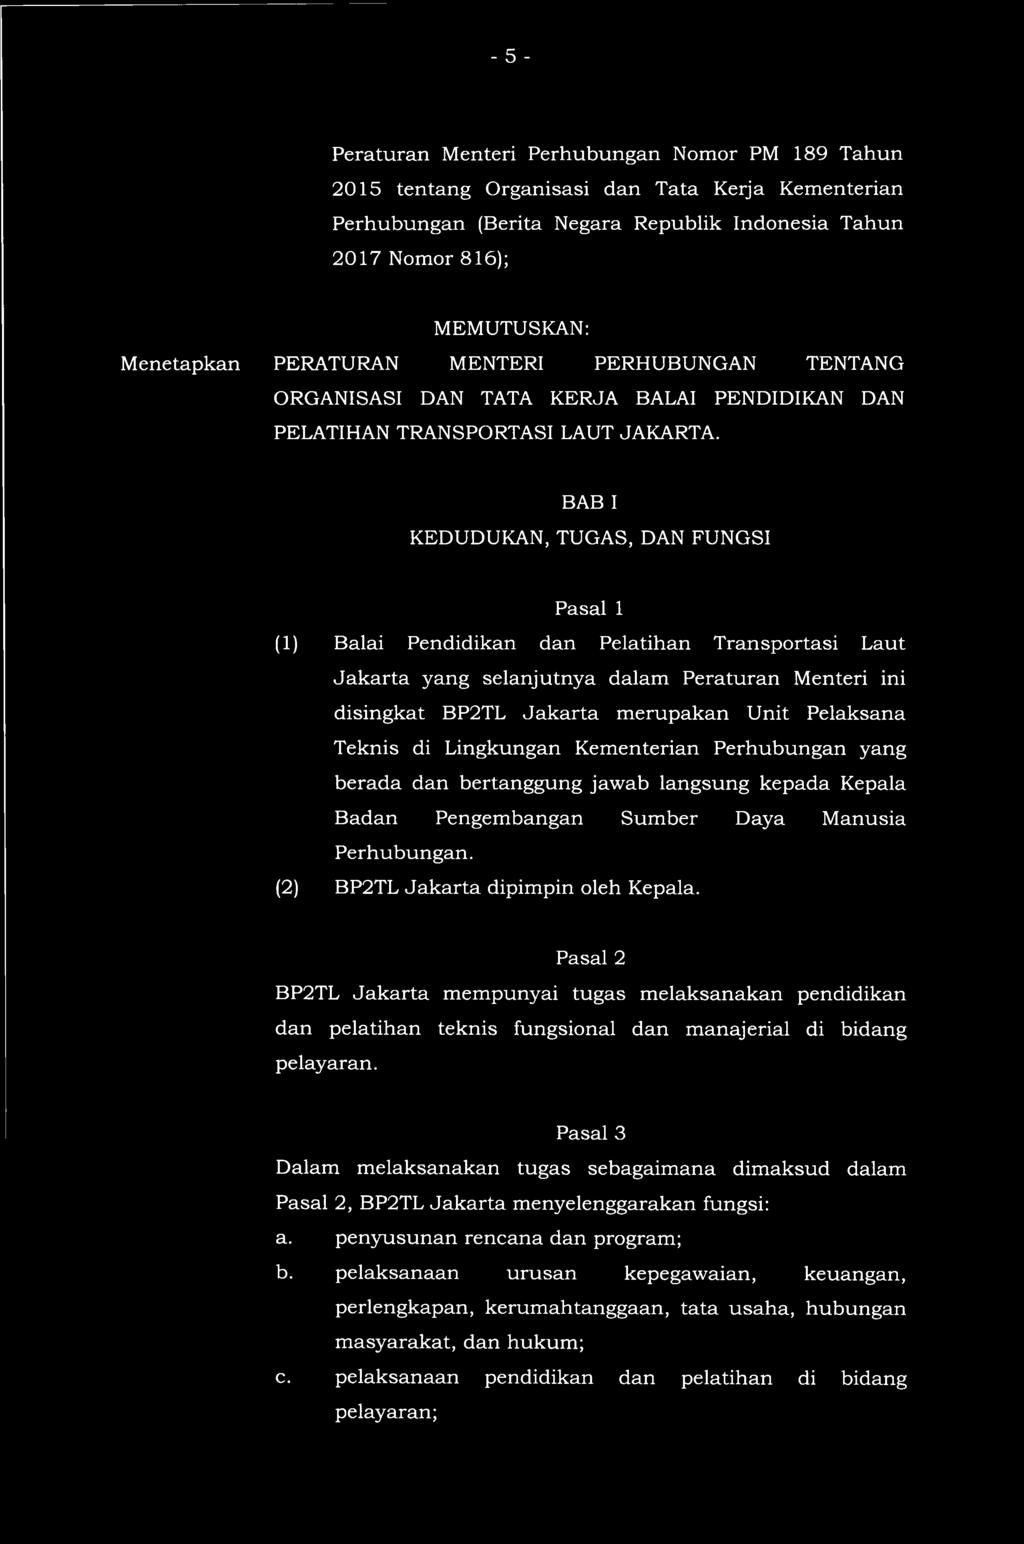 BAB I KEDUDUKAN, TUGAS, DAN FUNGSI Pasal 1 (1) Balai Pendidikan dan Pelatihan Transportasi Laut Jakarta yang selanjutnya dalam Peraturan Menteri ini disingkat BP2TL Jakarta merupakan Unit Pelaksana